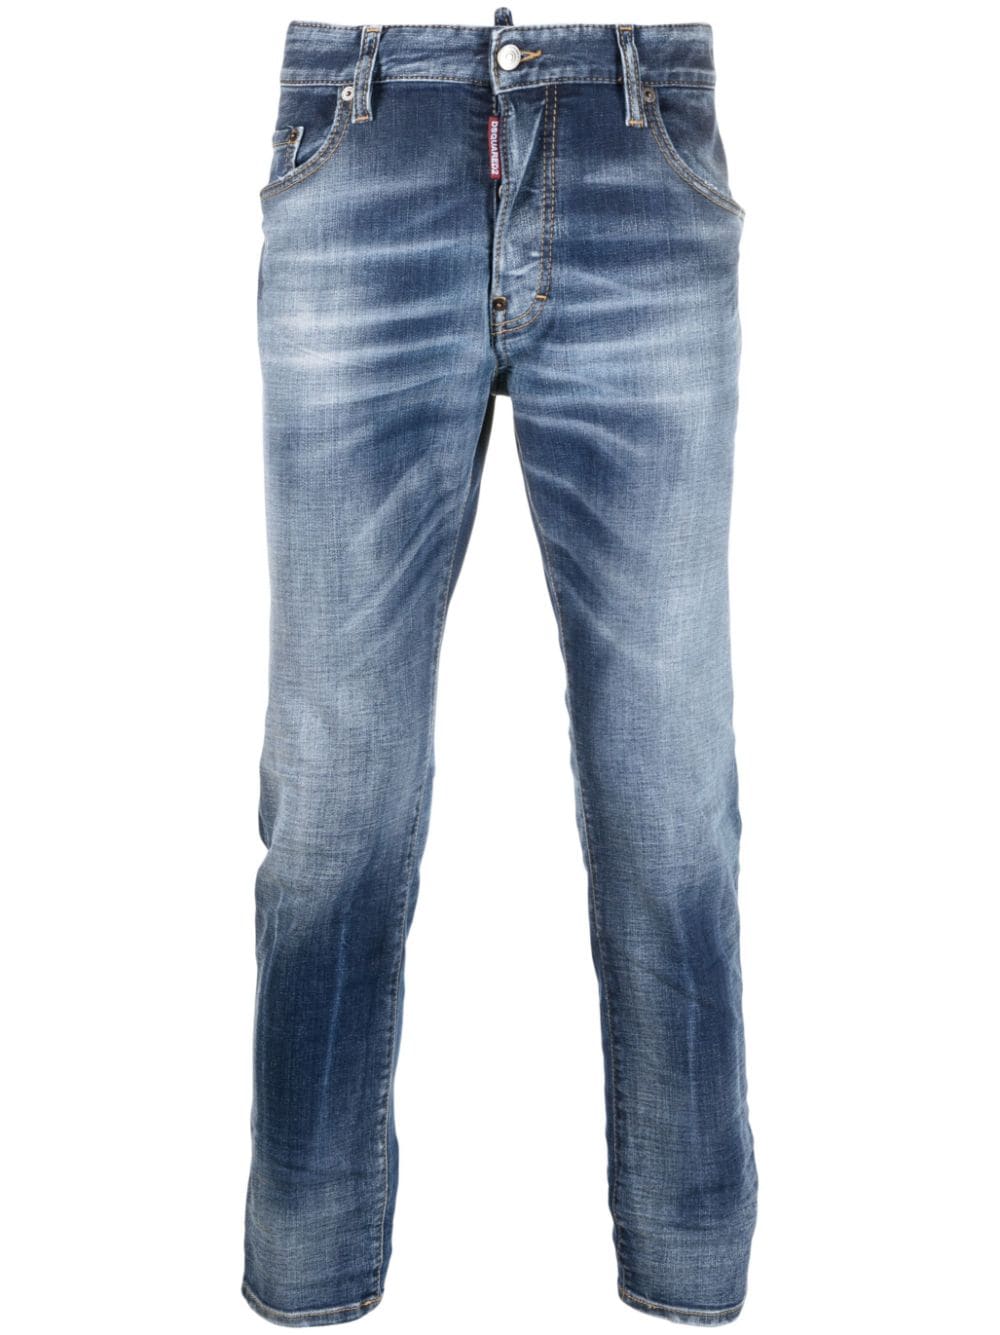 jeans cool guy jean con effetto schiarito